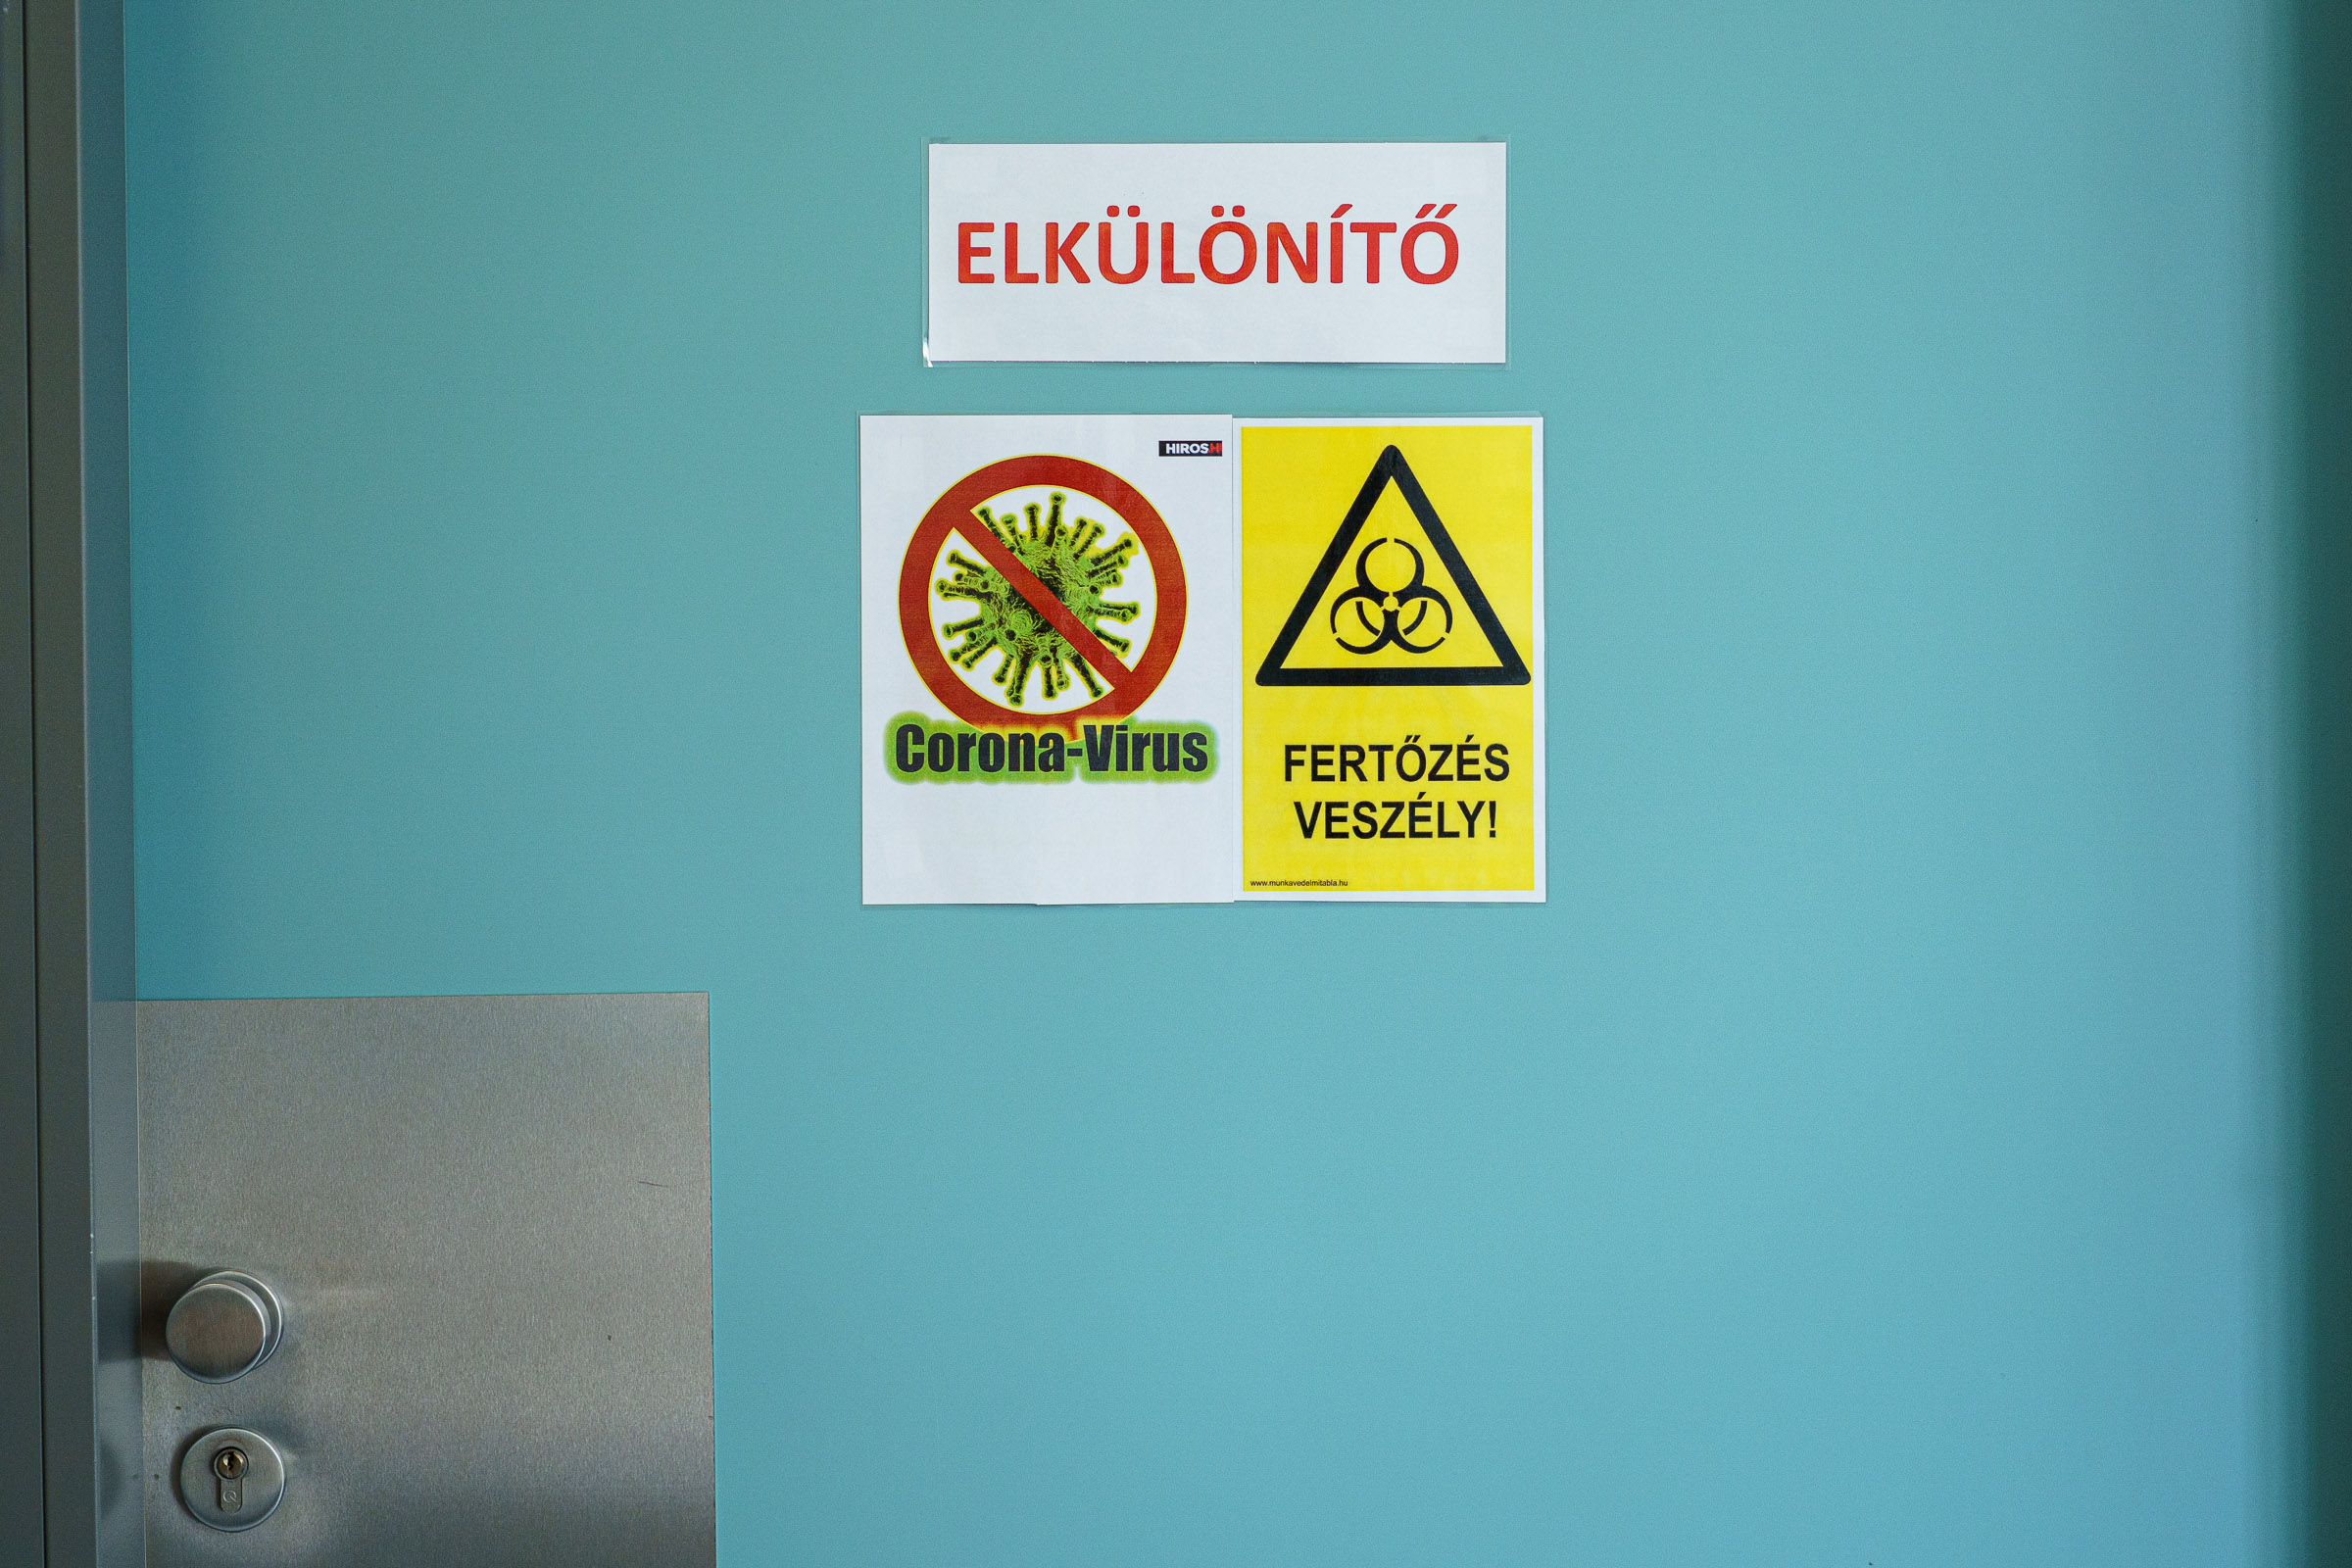 Majdnem tízezer ember kórházban kapta el a koronavírust 2020-ban Magyarországon